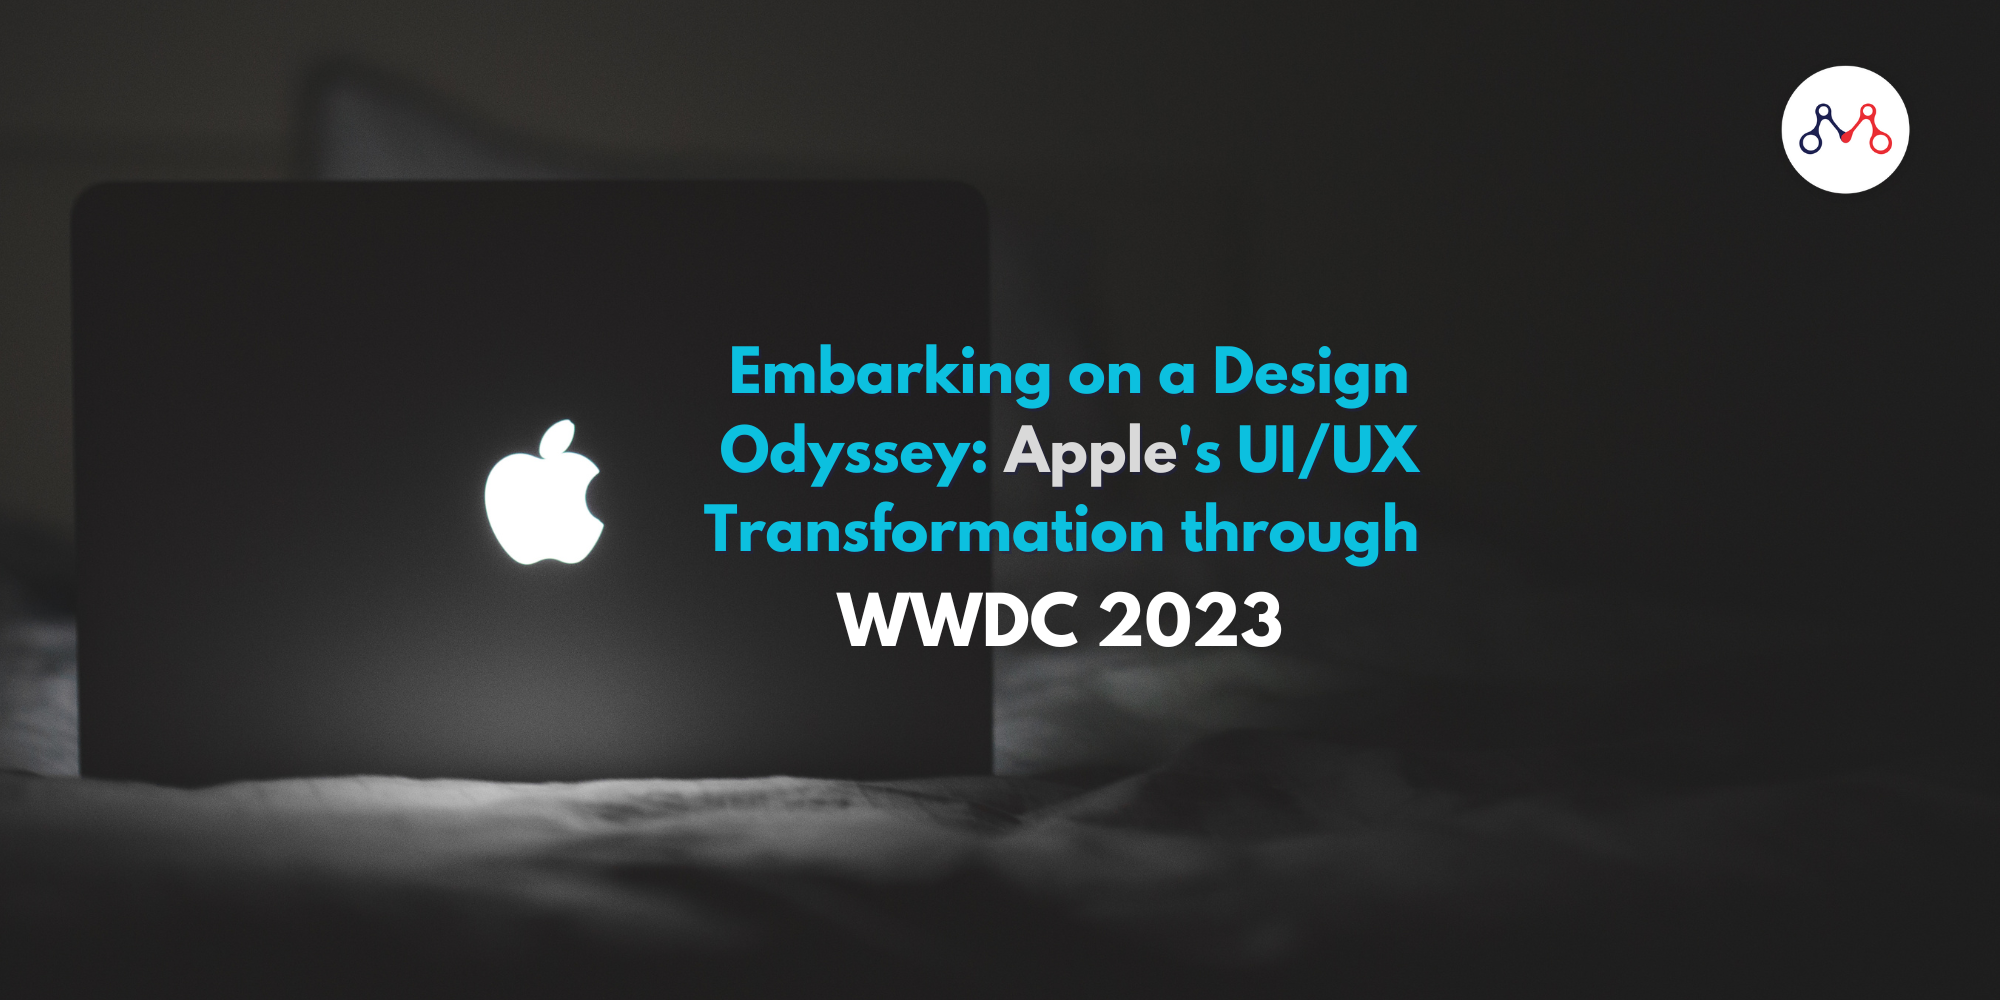 เริ่มดำเนินการ Design Odyssey: การเปลี่ยนแปลง UI/UX ของ Apple ผ่าน WWDC 2023